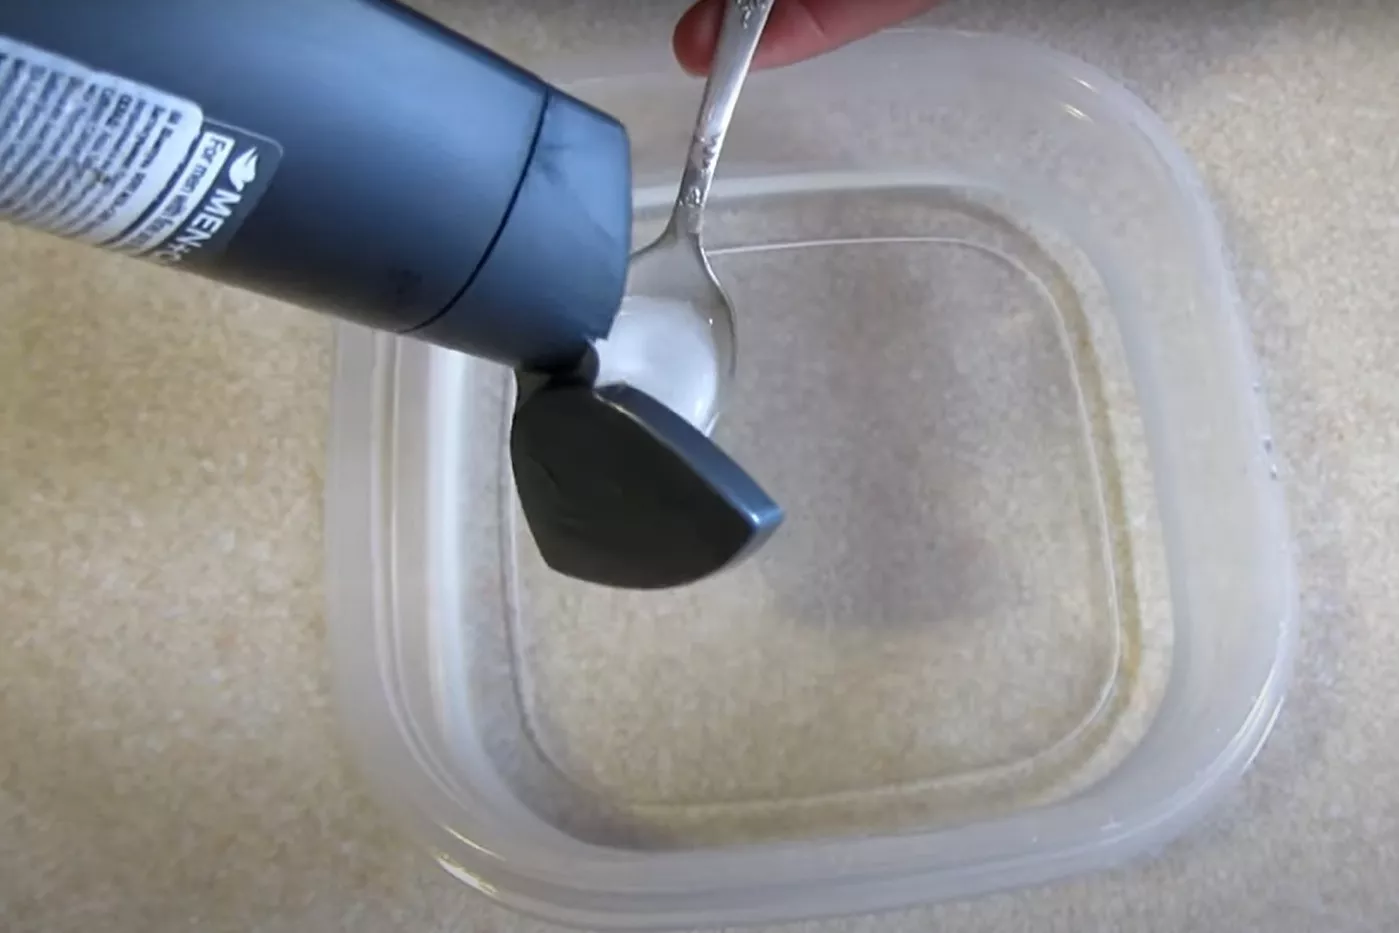 Як почистити гребінець. Фото: скріншот з YouTube / Поради для будинку 